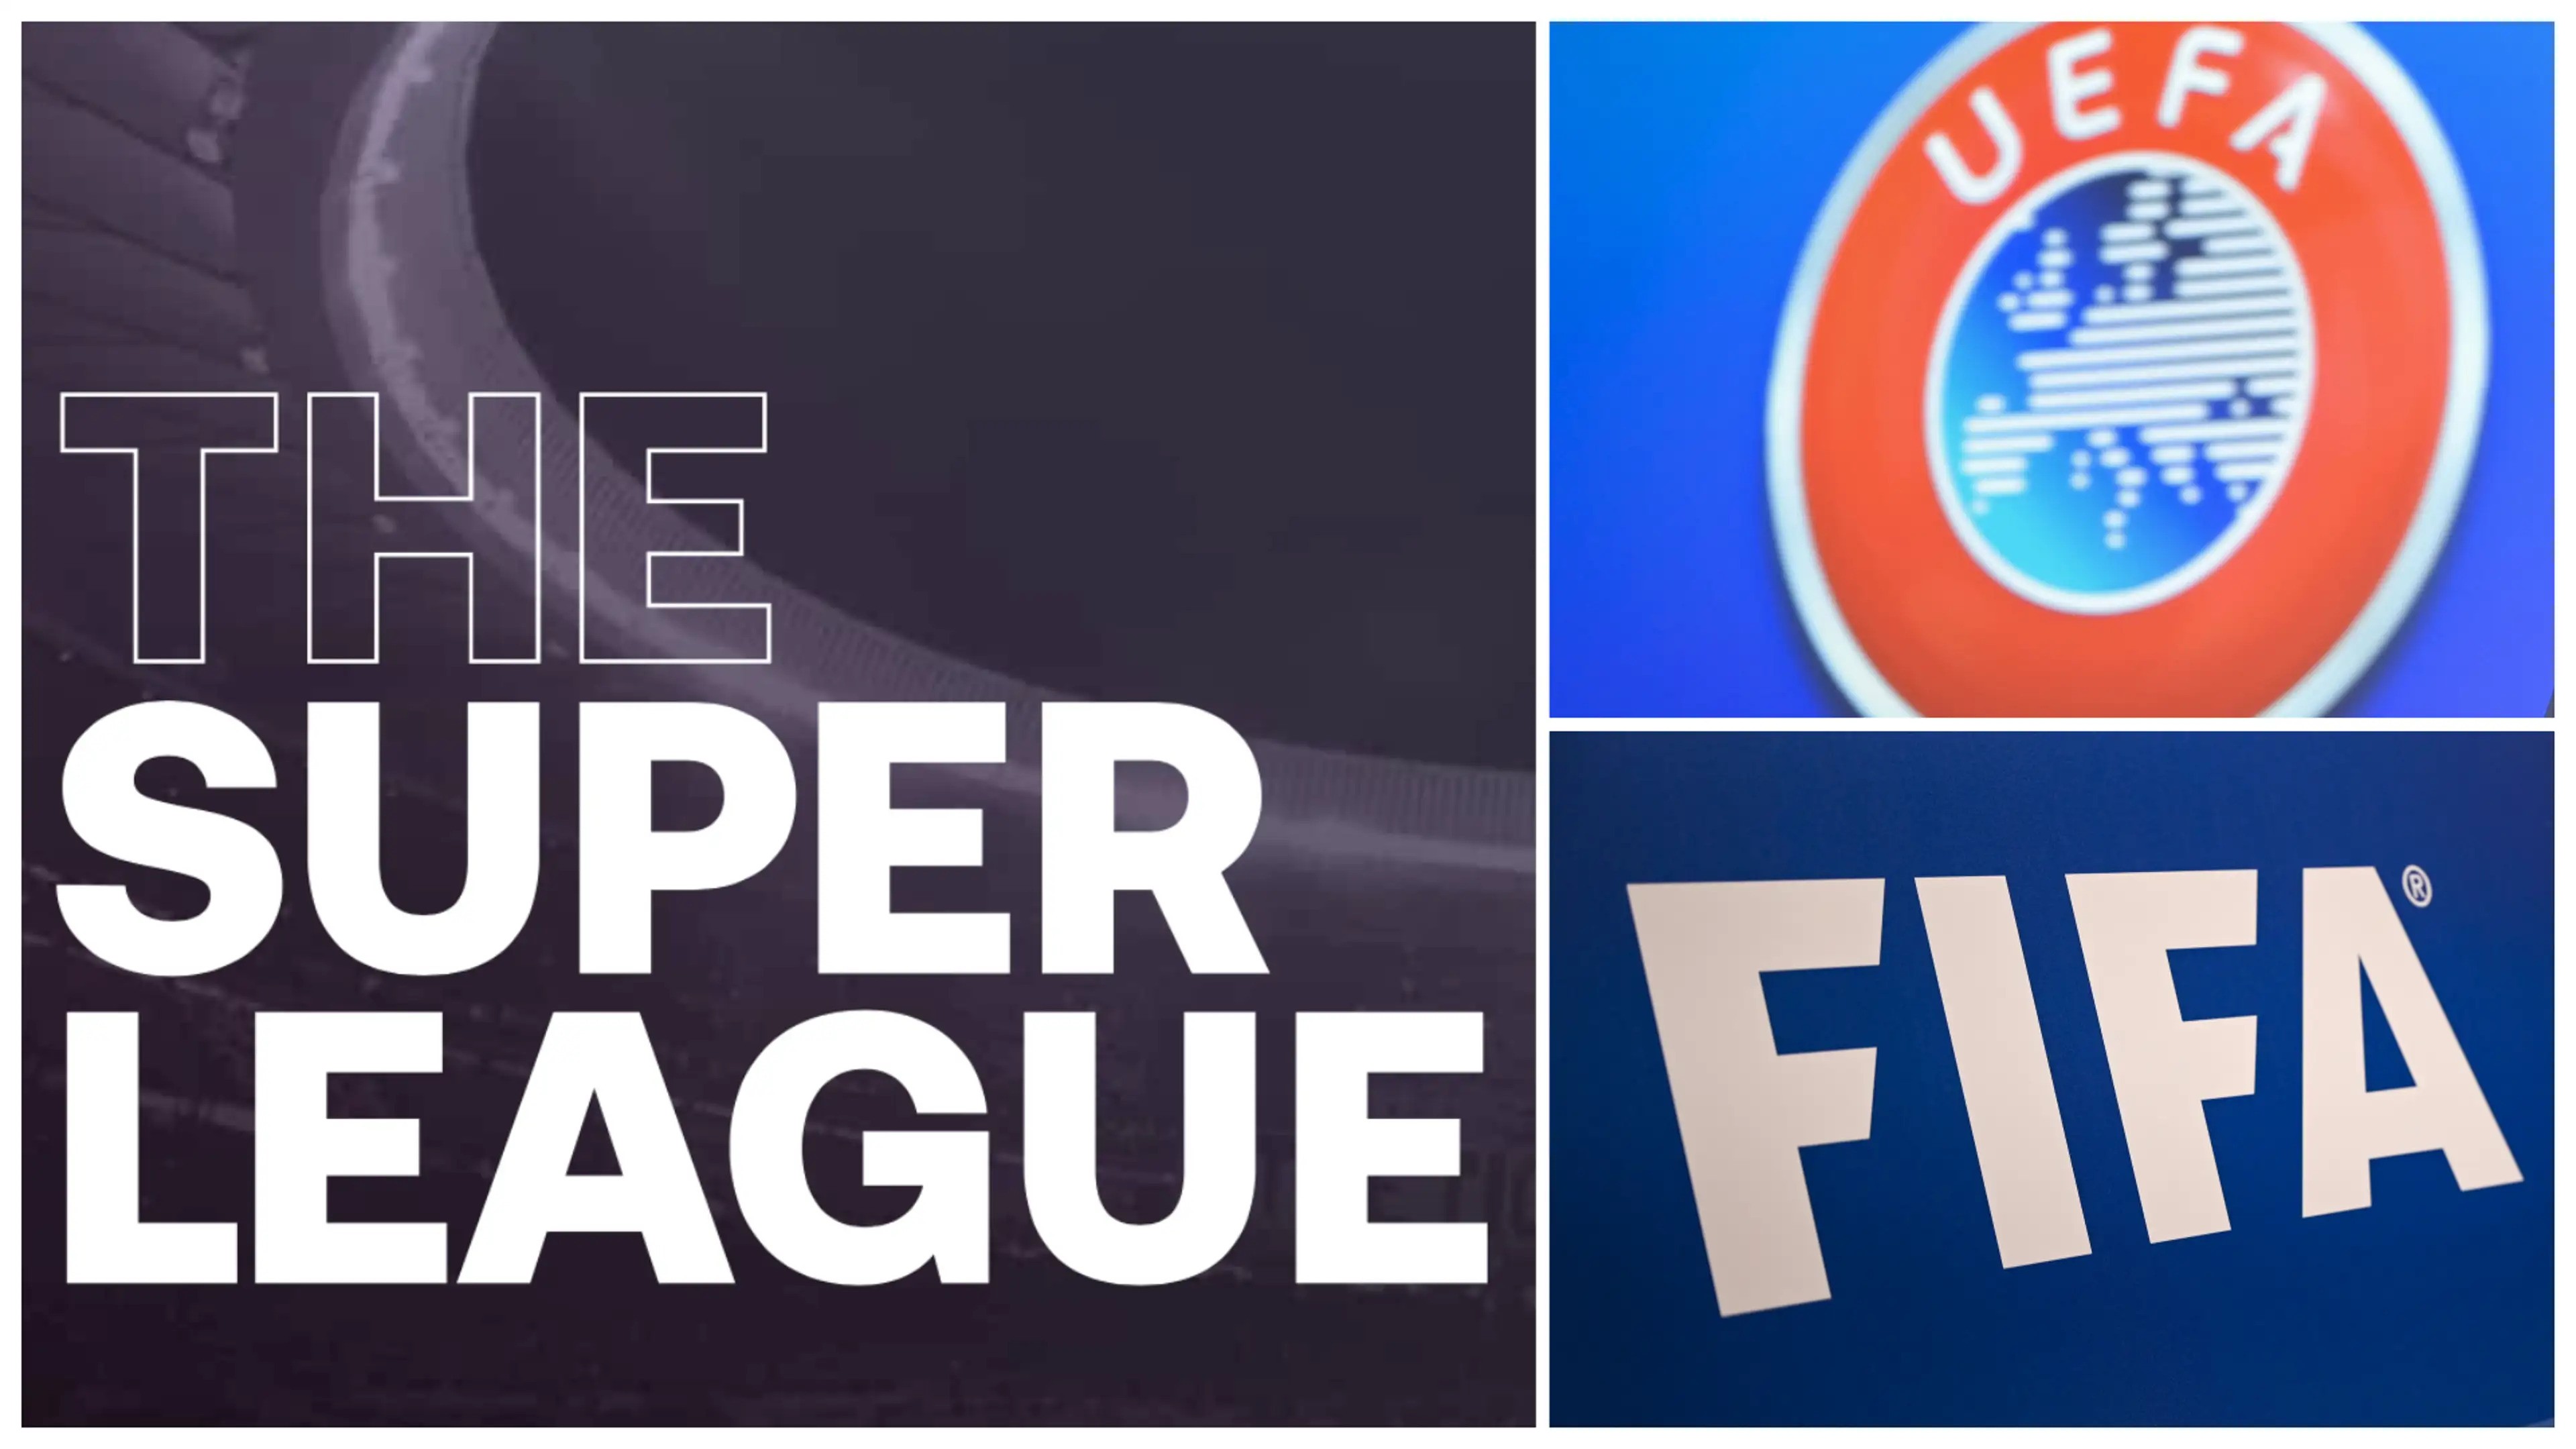 super-league-uefa-fifa-1703150115.jpg